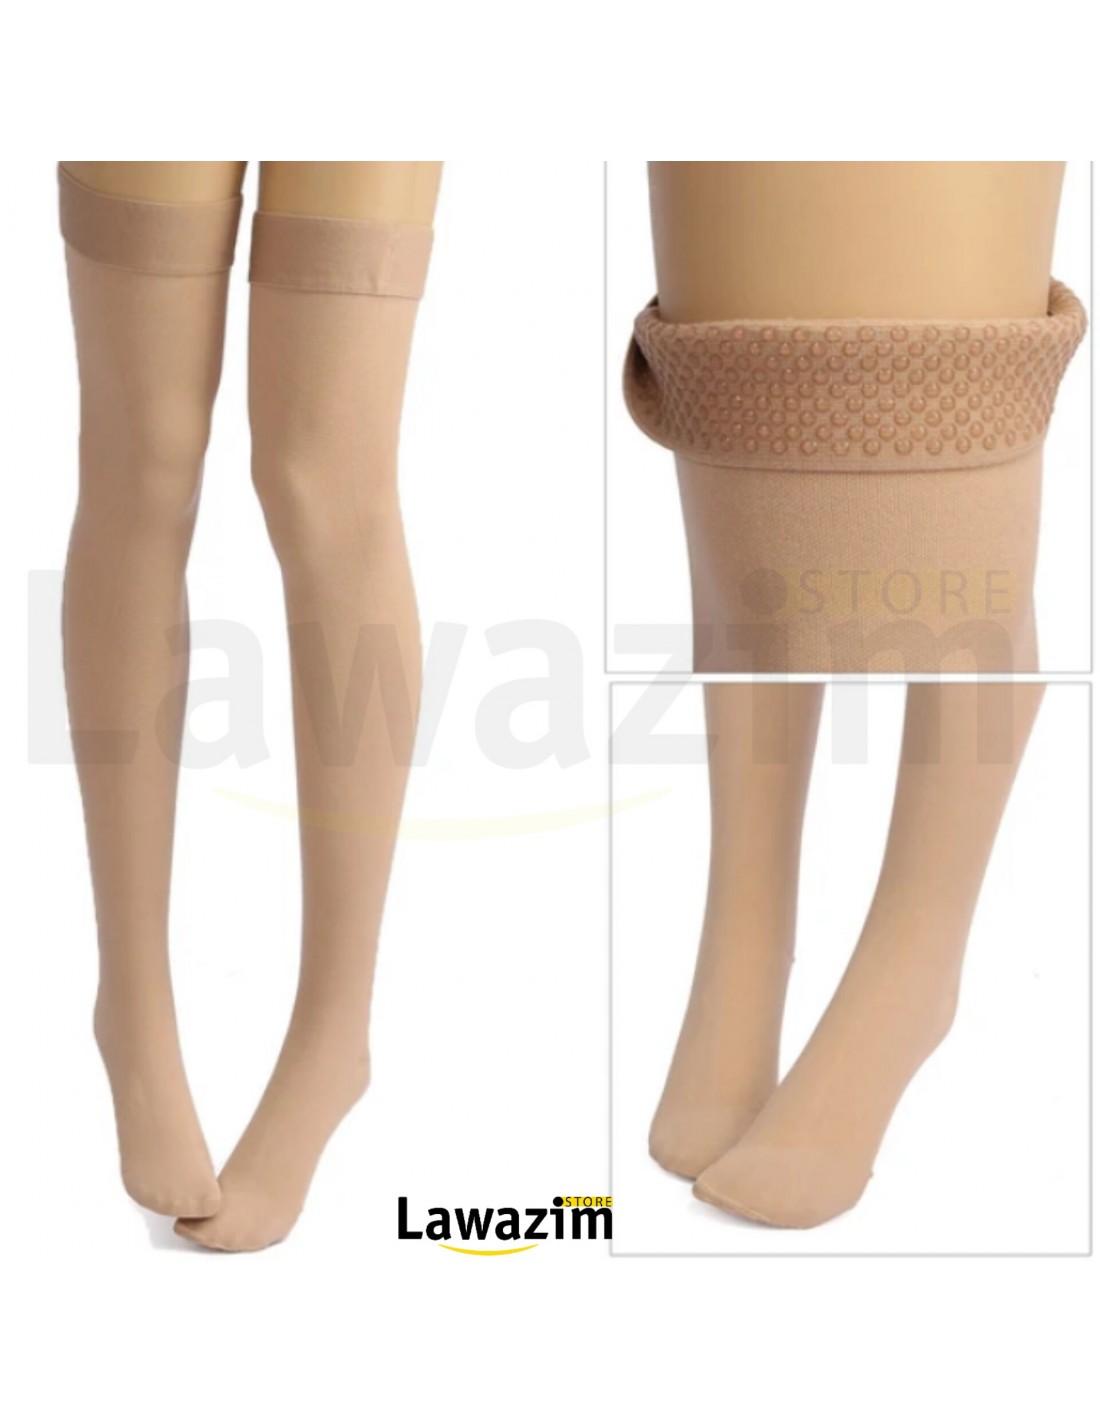 الجوارب الطويلة الجذابة ذات لون فاتح للنساء Women's Coverage Thigh-Highs Long Nylon Stockings Socks